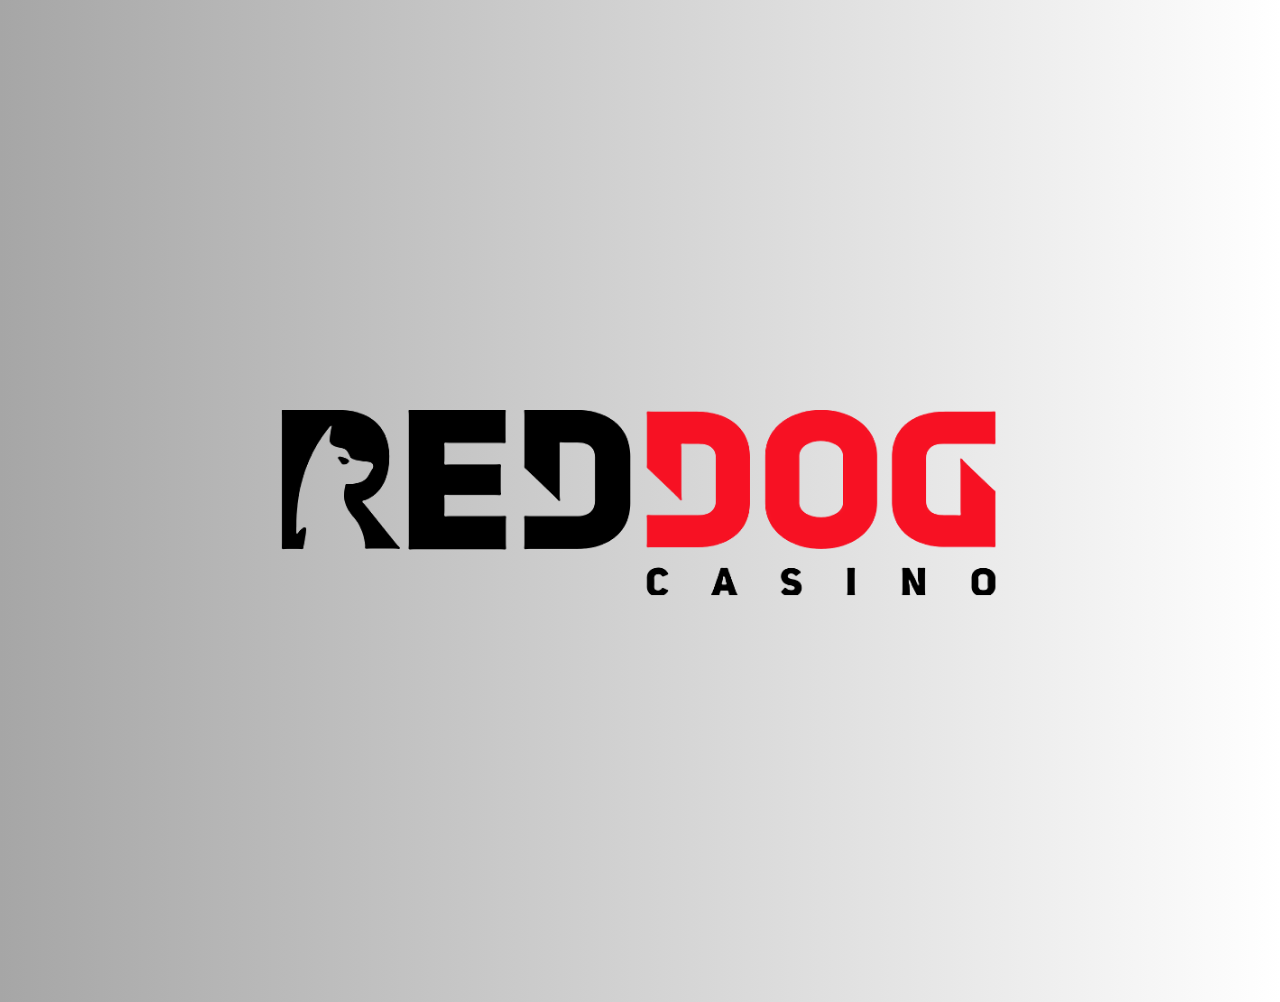 Red Dog Casino: A Comprehensive Review